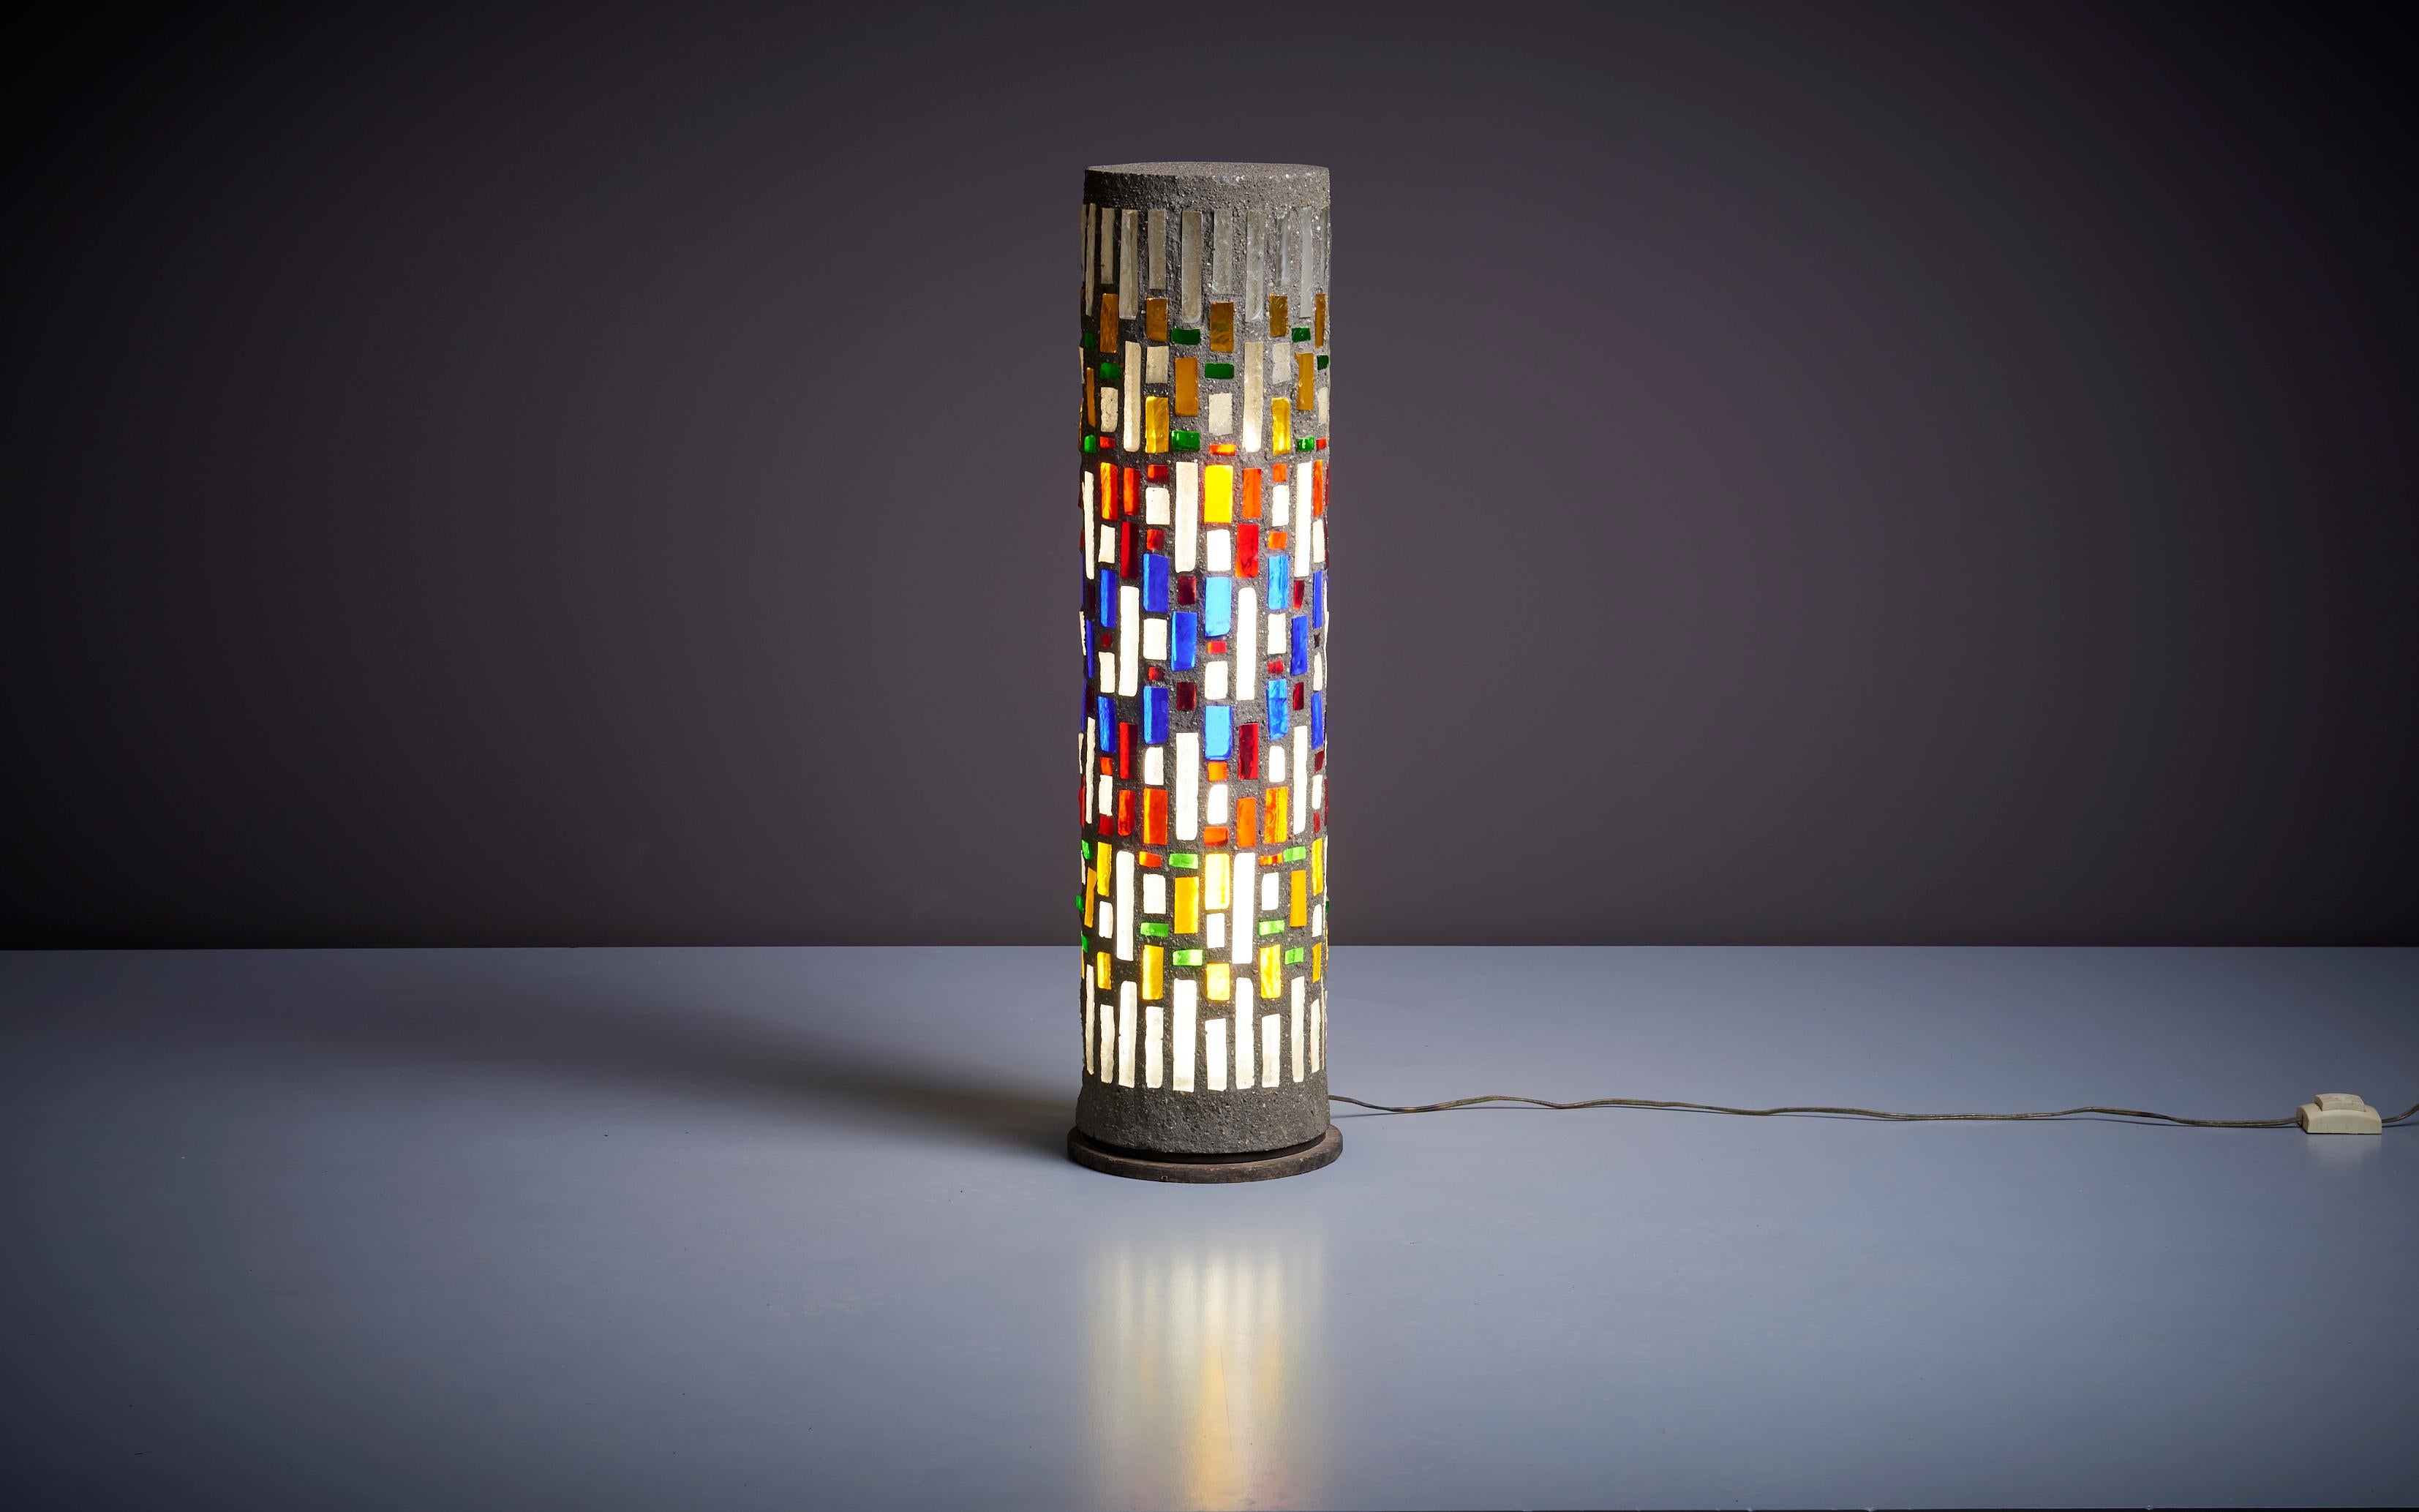 Wir haben diese Lampe in Frankreich gefunden und sie wurde in einem modernistischen Haus aus den 1960er Jahren in der Nähe von Bordeaux installiert.
Sehr einzigartig. Bitte beachten Sie: Die Leuchte sollte fachgerecht und entsprechend den örtlichen